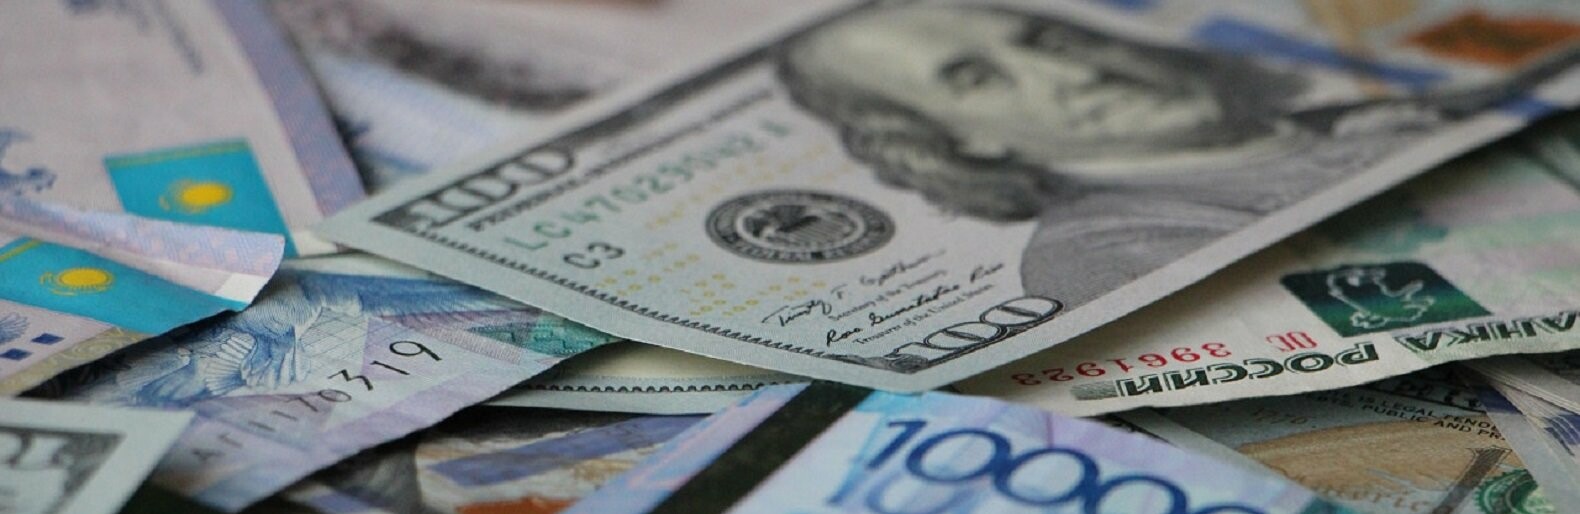 Выгодный курс обмена валюты в калуге как лучше вывести биткоины на карту